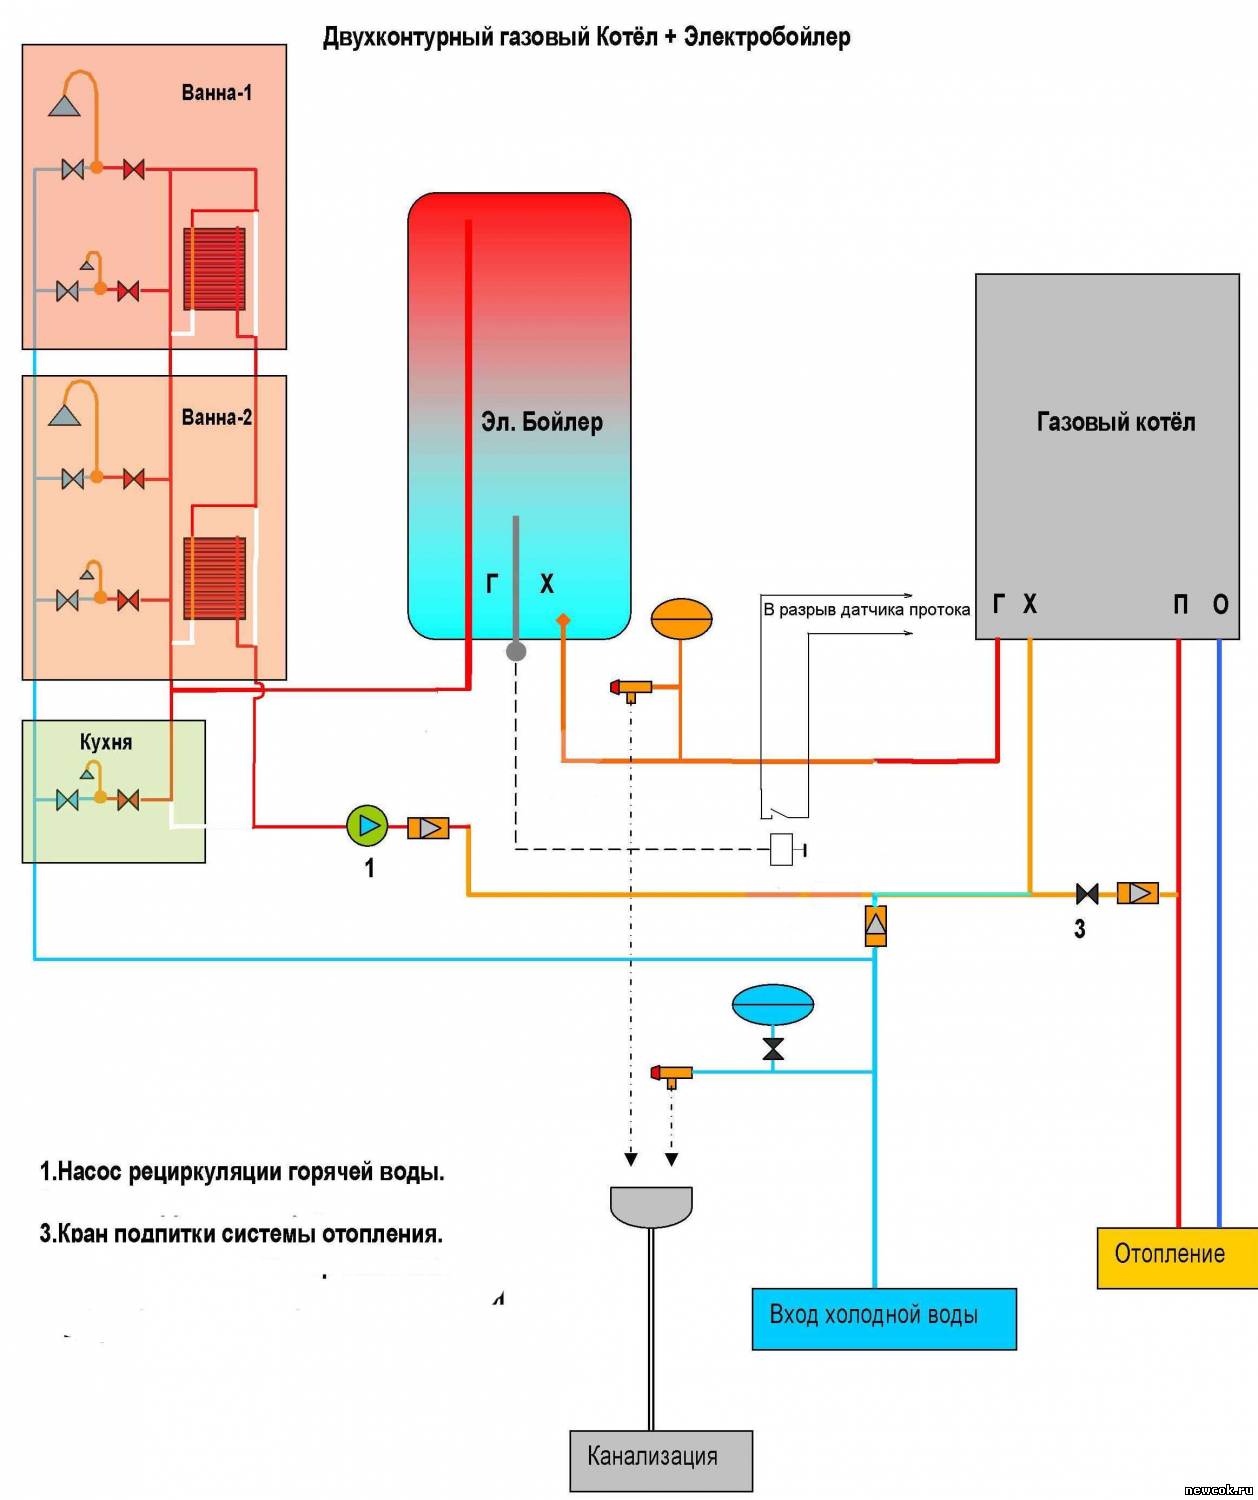 Объединение электрического бойлера и газового котла: хорошая идея